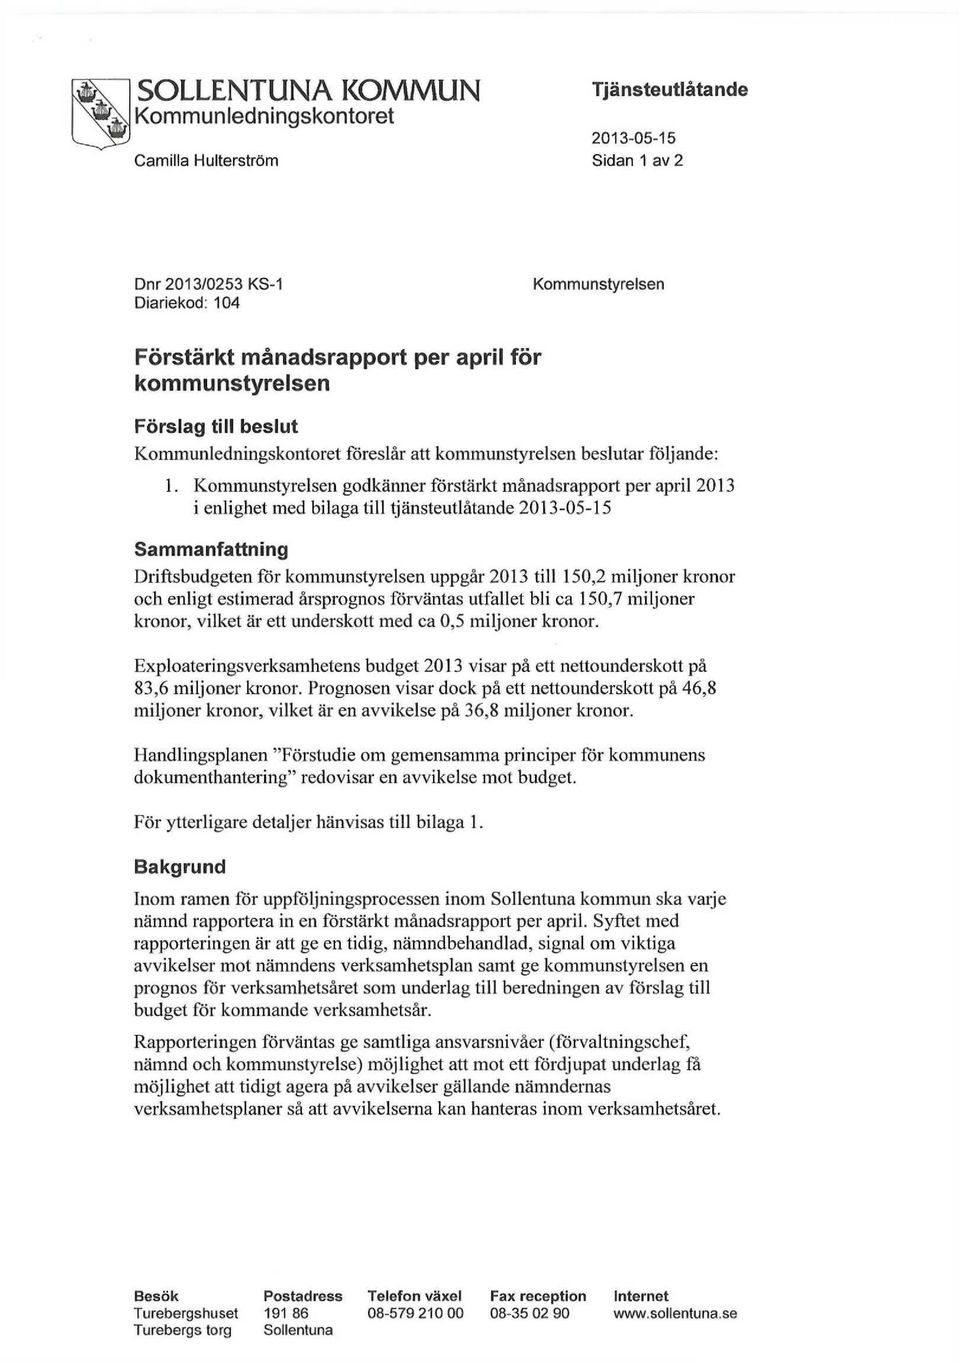 Kommunstyrelsen godkänner förstärkt månadsrapport per april 2013 i enlighet med bilaga till tjänsteutlåtande 2013-05-15 Sammanfattning Driftsbudgeten för kommunstyrelsen uppgår 2013 till 150,2